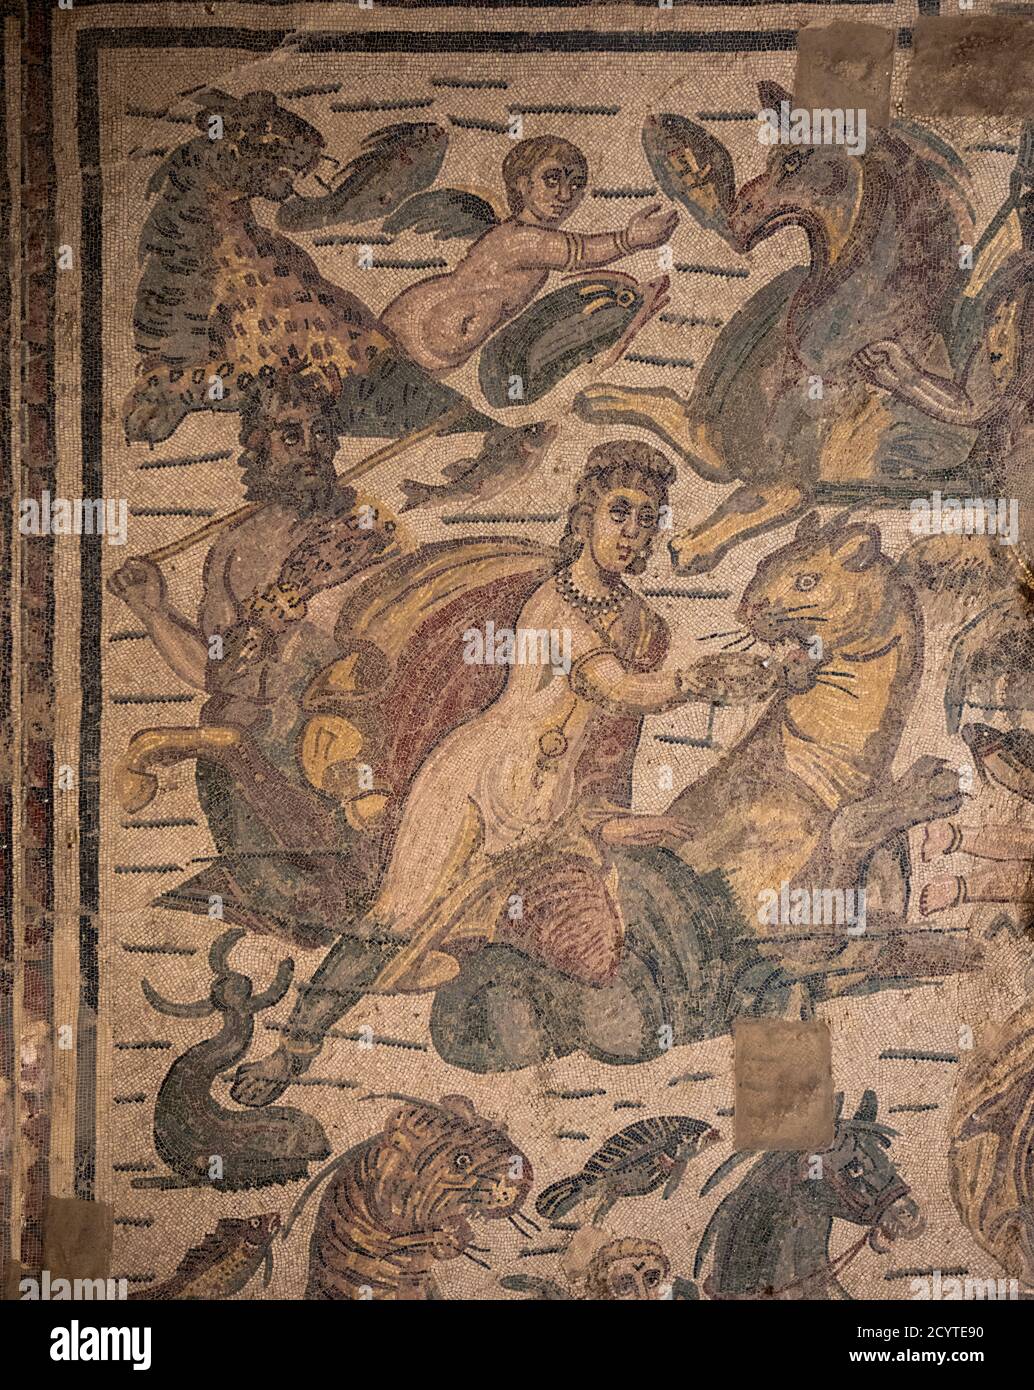 Nereide e centauro con una leonessa dei mosaici romani in Villa Armerina, Sicilia. Dettaglio dalla stanza che mostra il mito di Arion e il delfino. Foto Stock